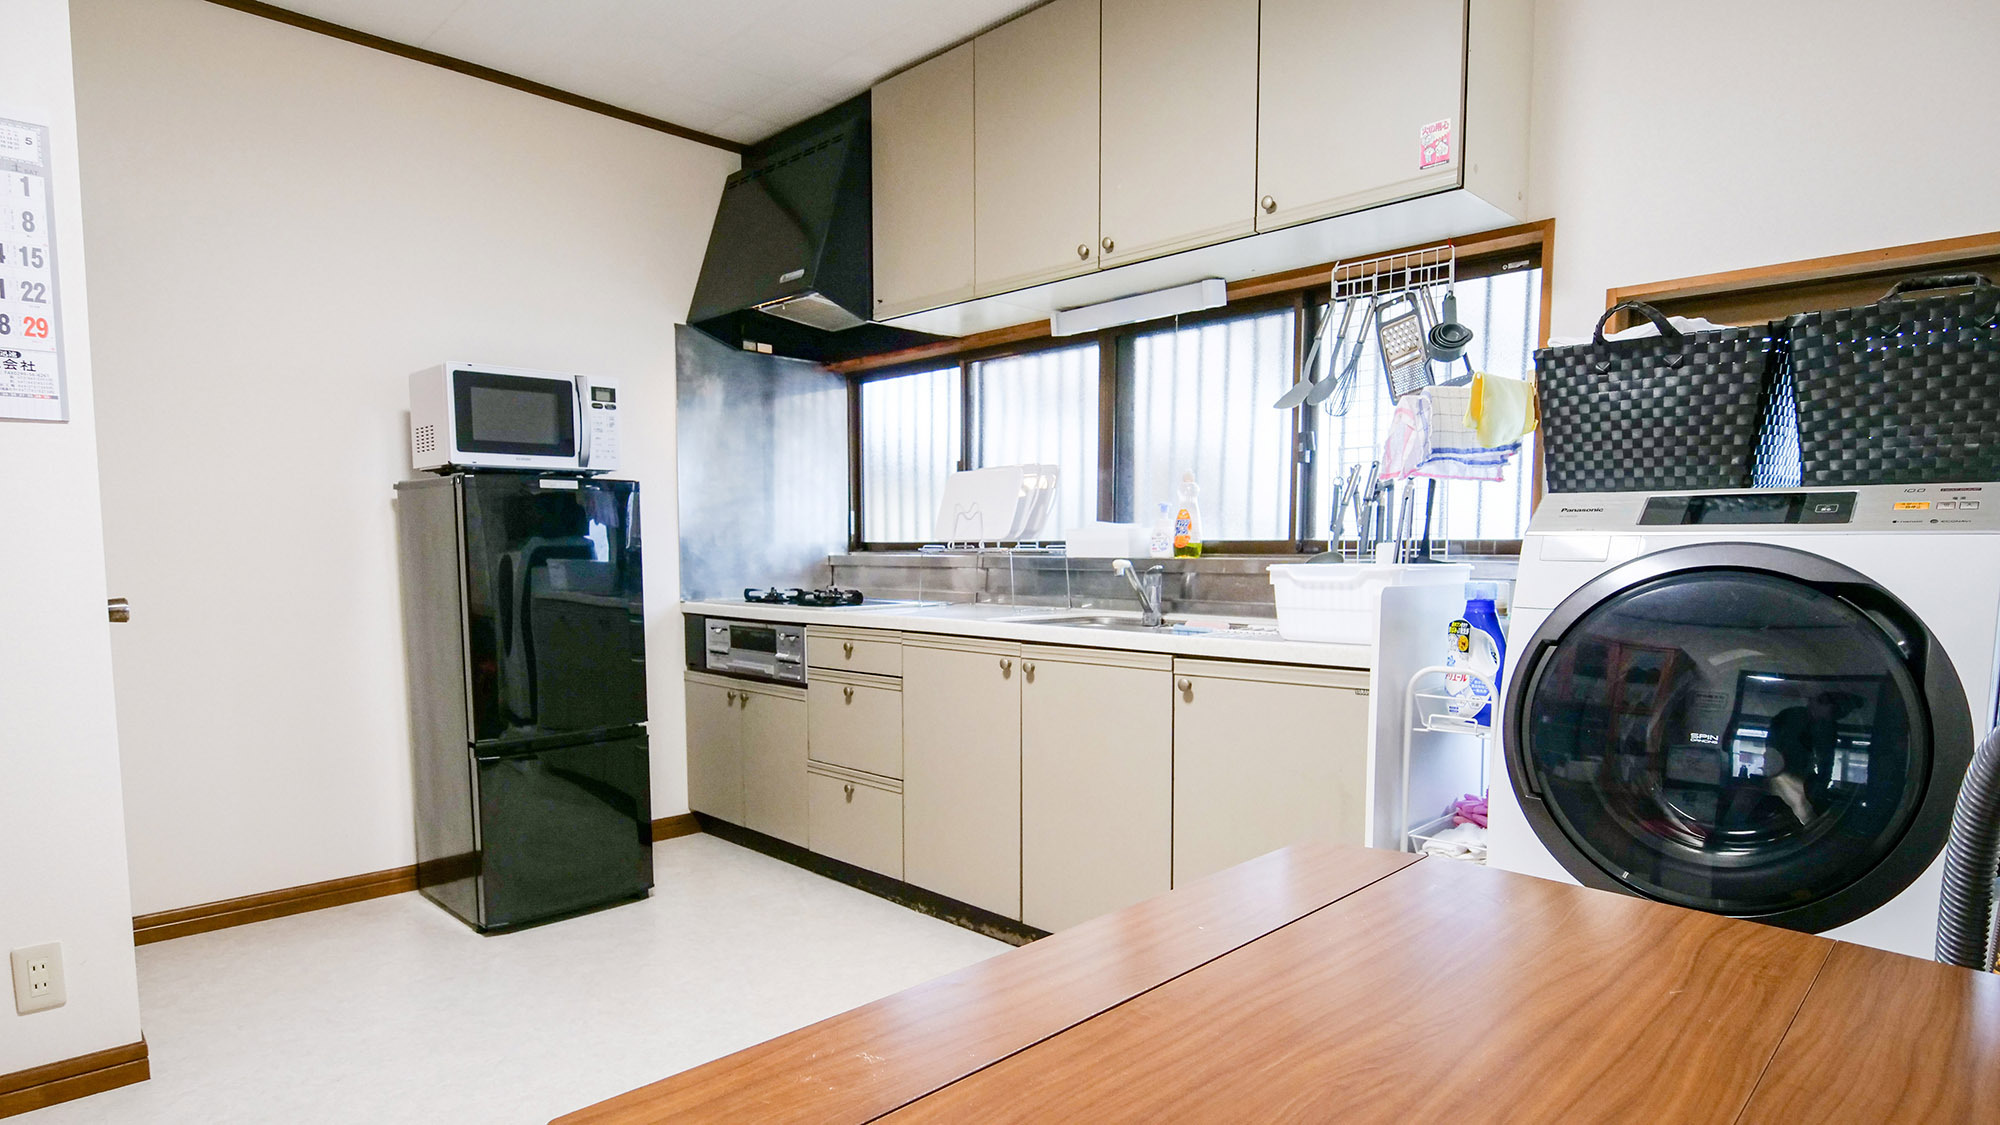 ・【台所】広々としたスペースのあるキッチン、ドラム式洗濯機も完備しております